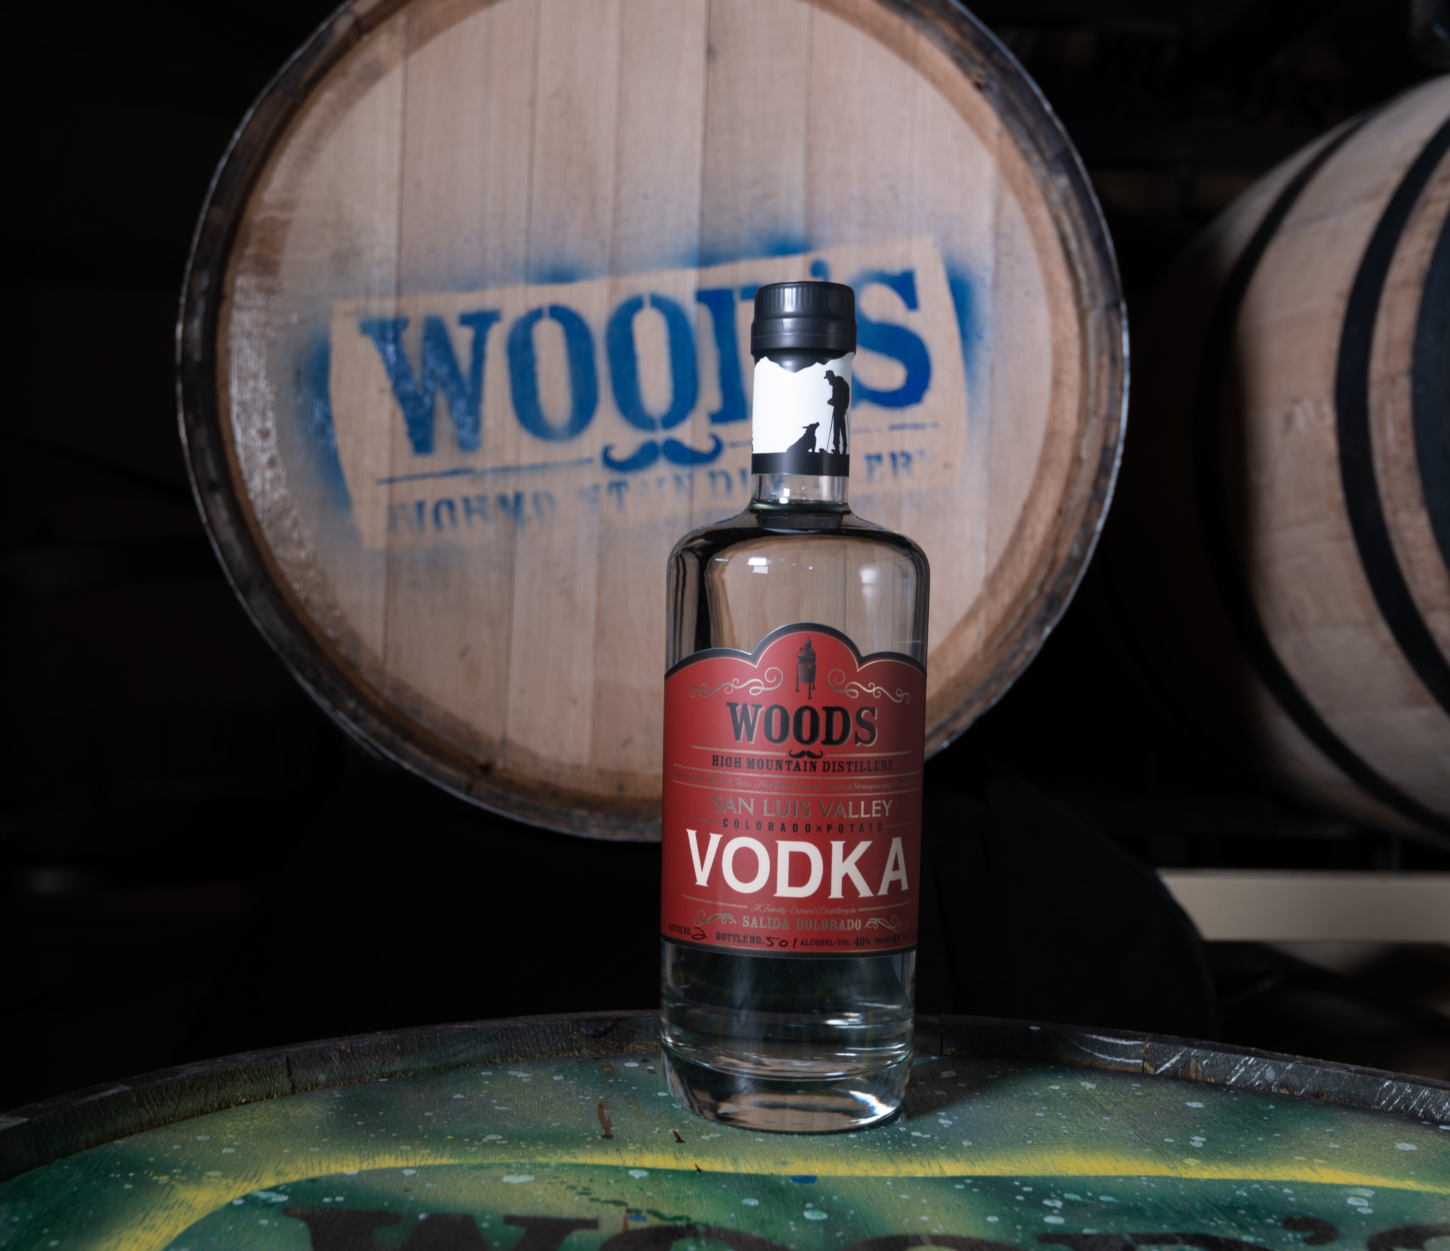 Wood's San Luis Valley Vodka